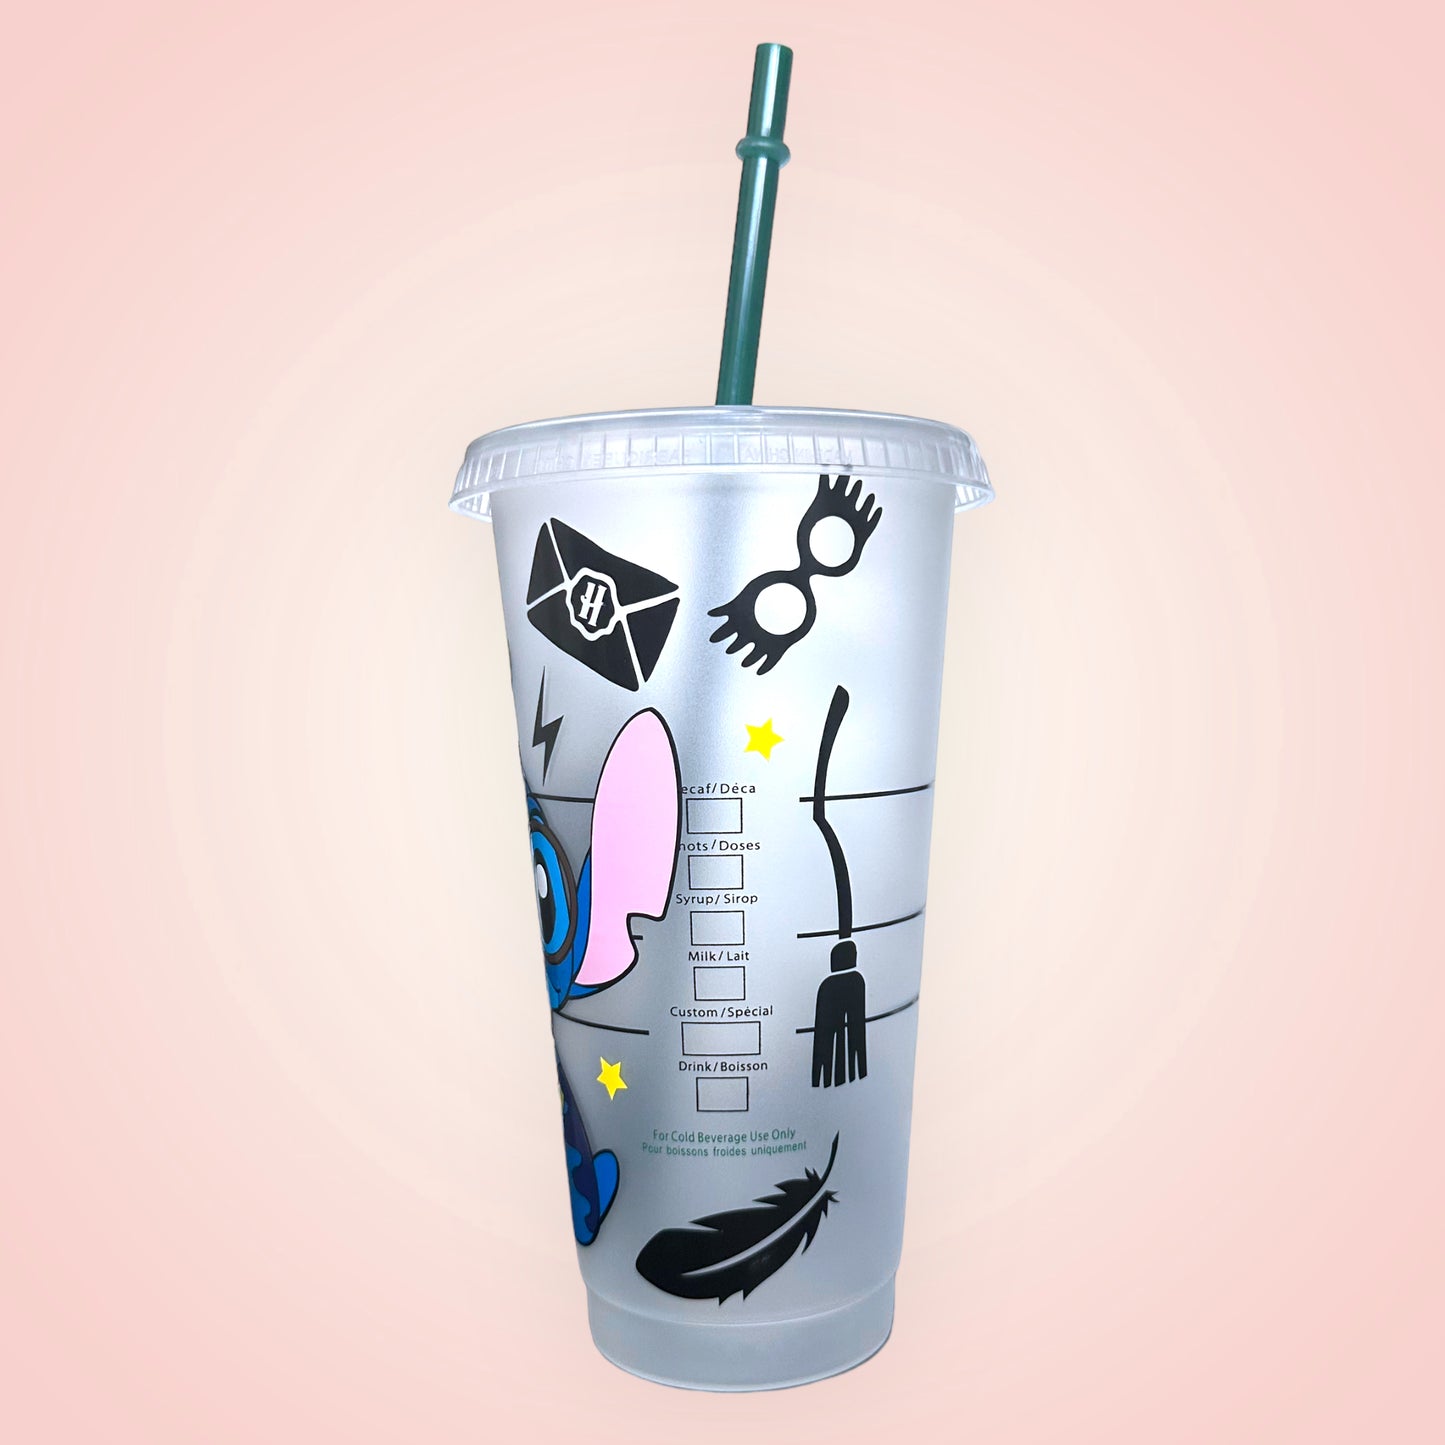 Gobelet / Cup Starbucks édition personnalisation de votre choix avec p –  creamimy